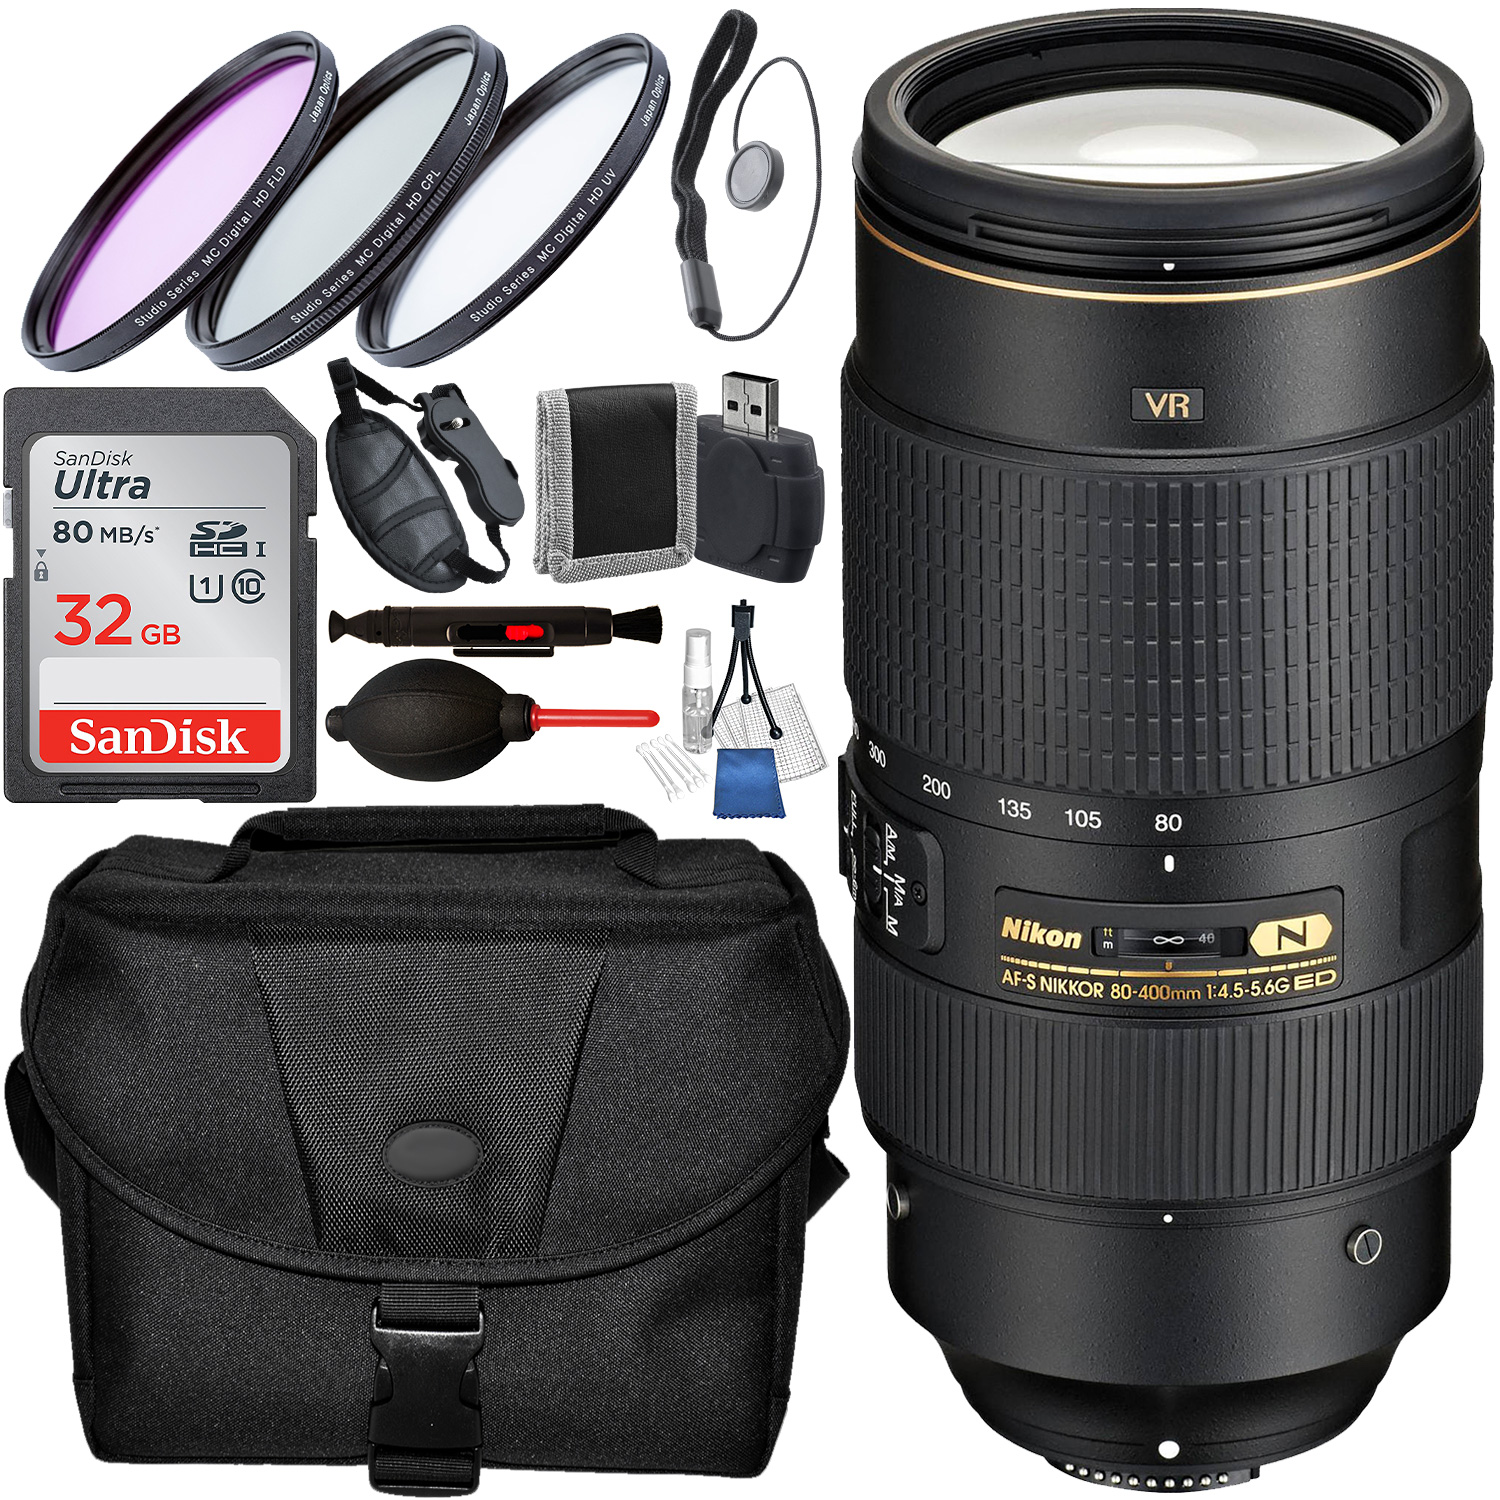 Nikon AF-S NIKKOR 80-400mm f/4.5-5.6G ED VR Lens - 2208 with Accessory Bundle